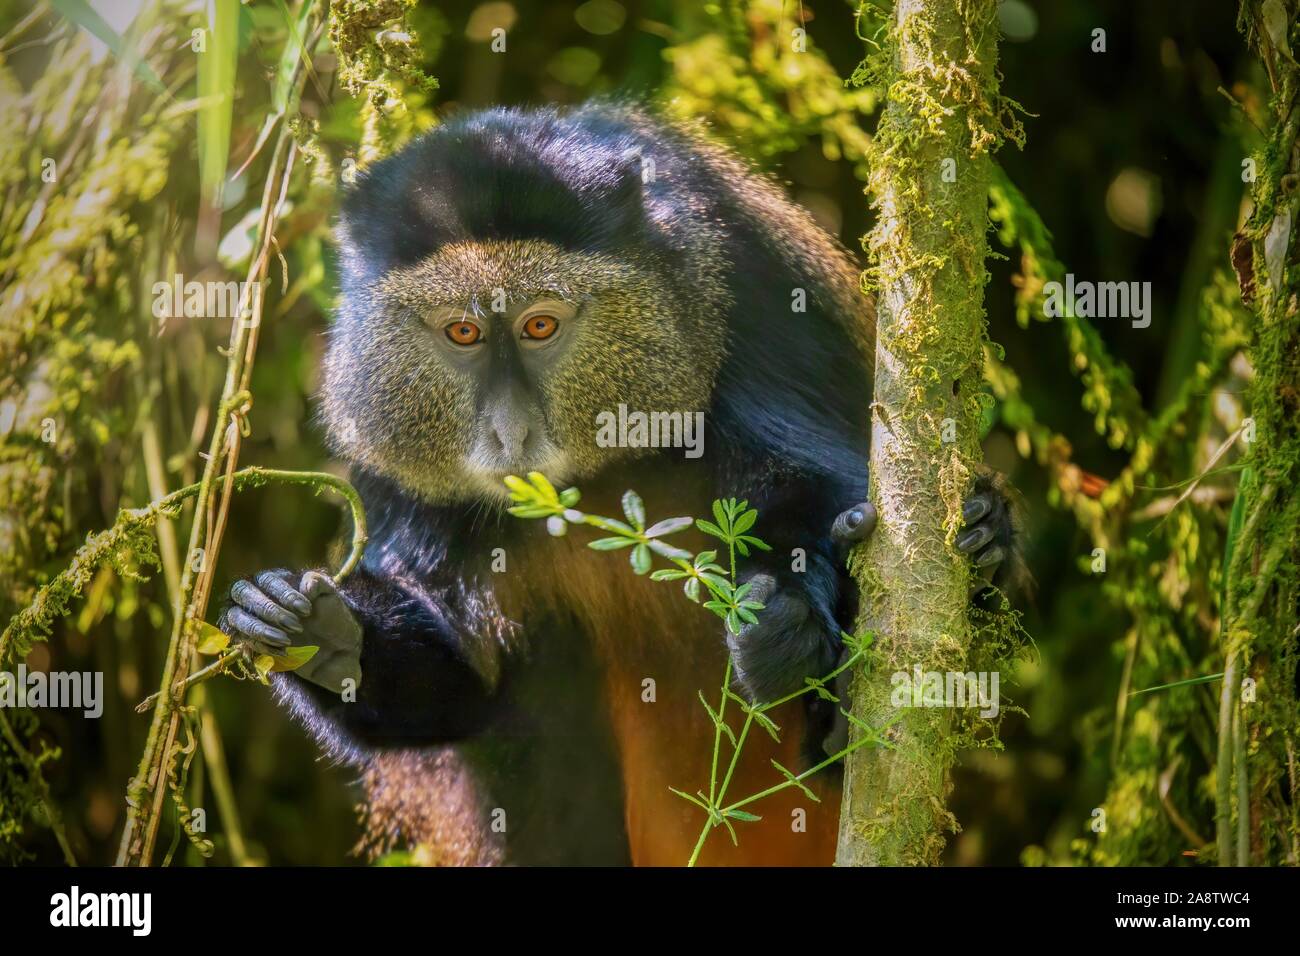 Vue rapprochée d'un sauvage singe doré (Latin - Cercopithecus kandti), une espèce en voie de disparition vivant dans son habitat naturel, une forêt de bambou au Rwanda. Banque D'Images